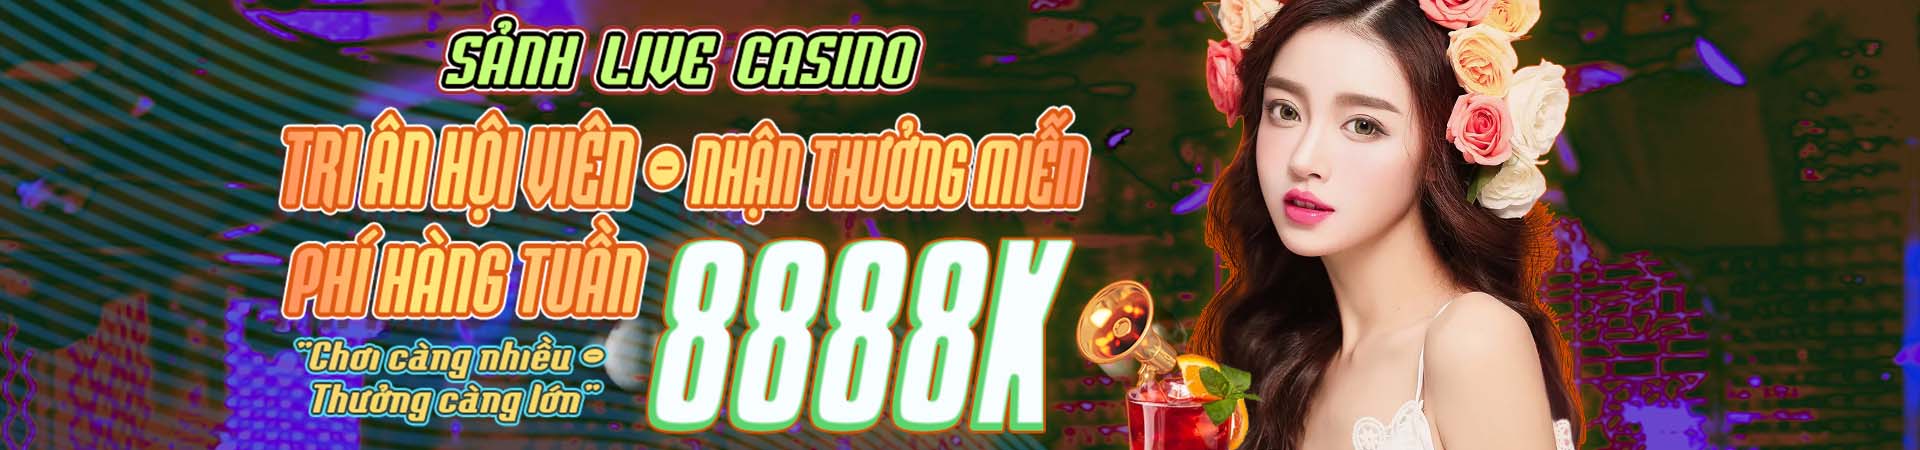 Casino winbet66 nhận thưởng miễn phí